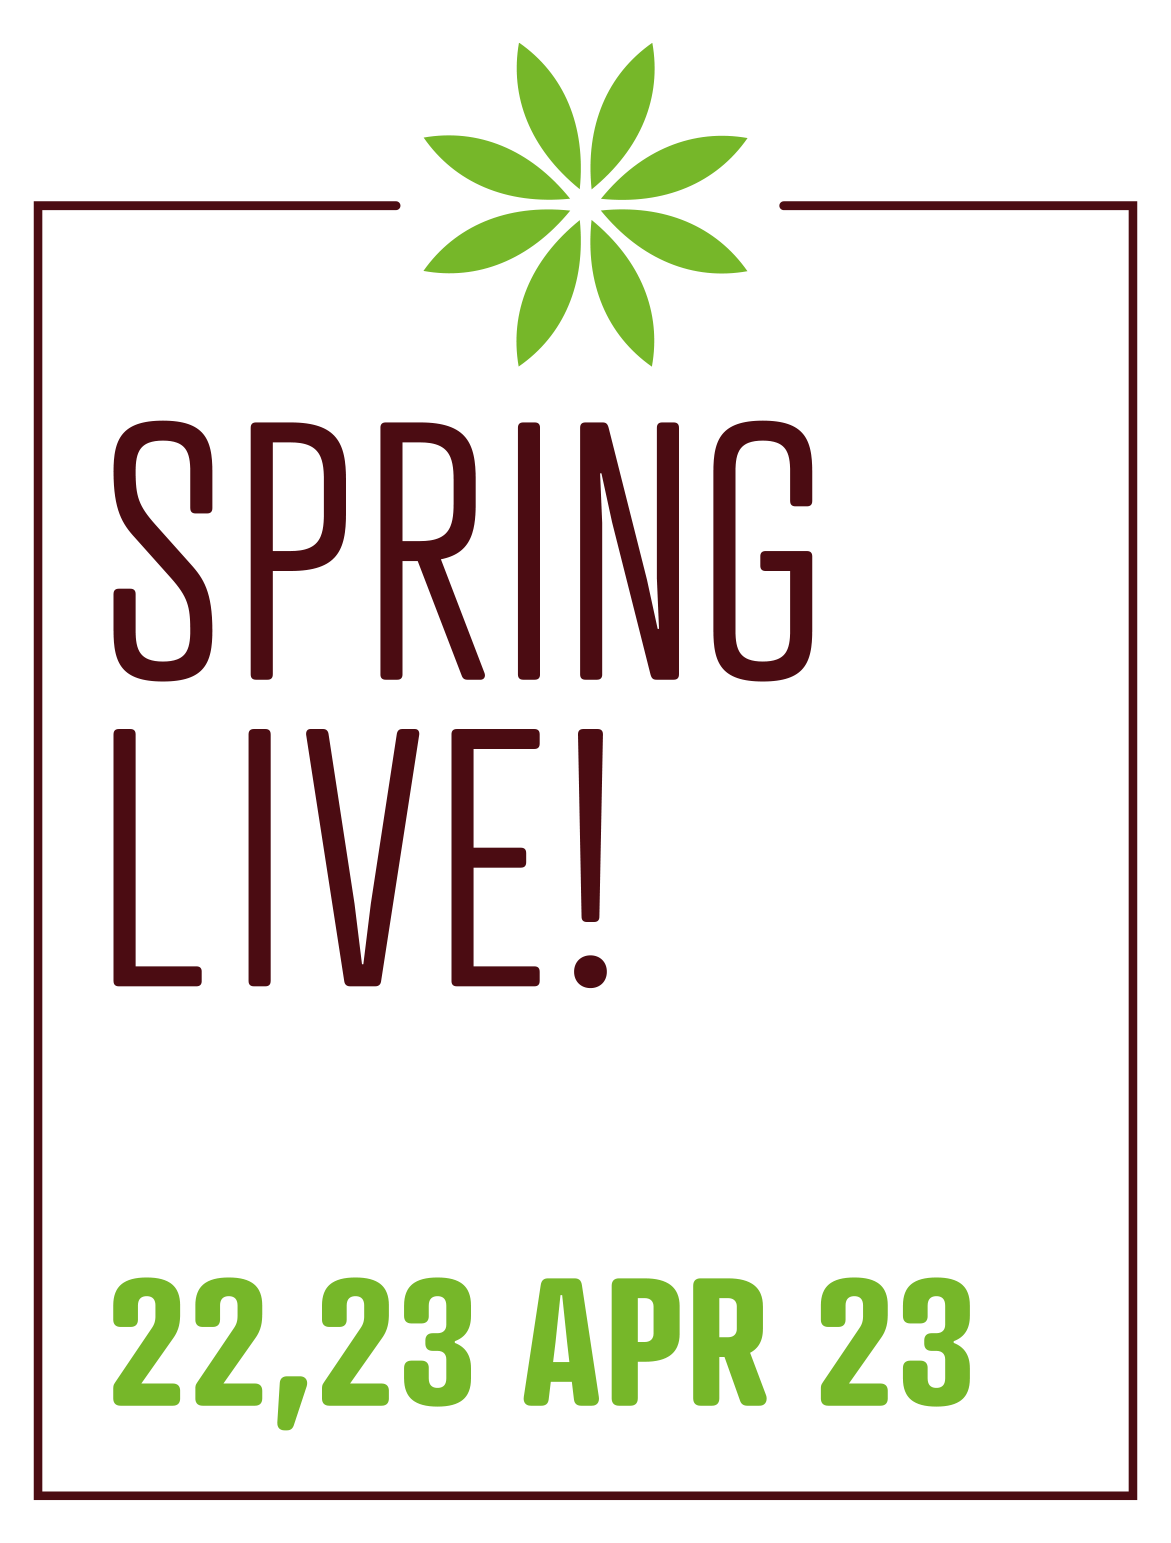 Spring Live! South of England Event Centre